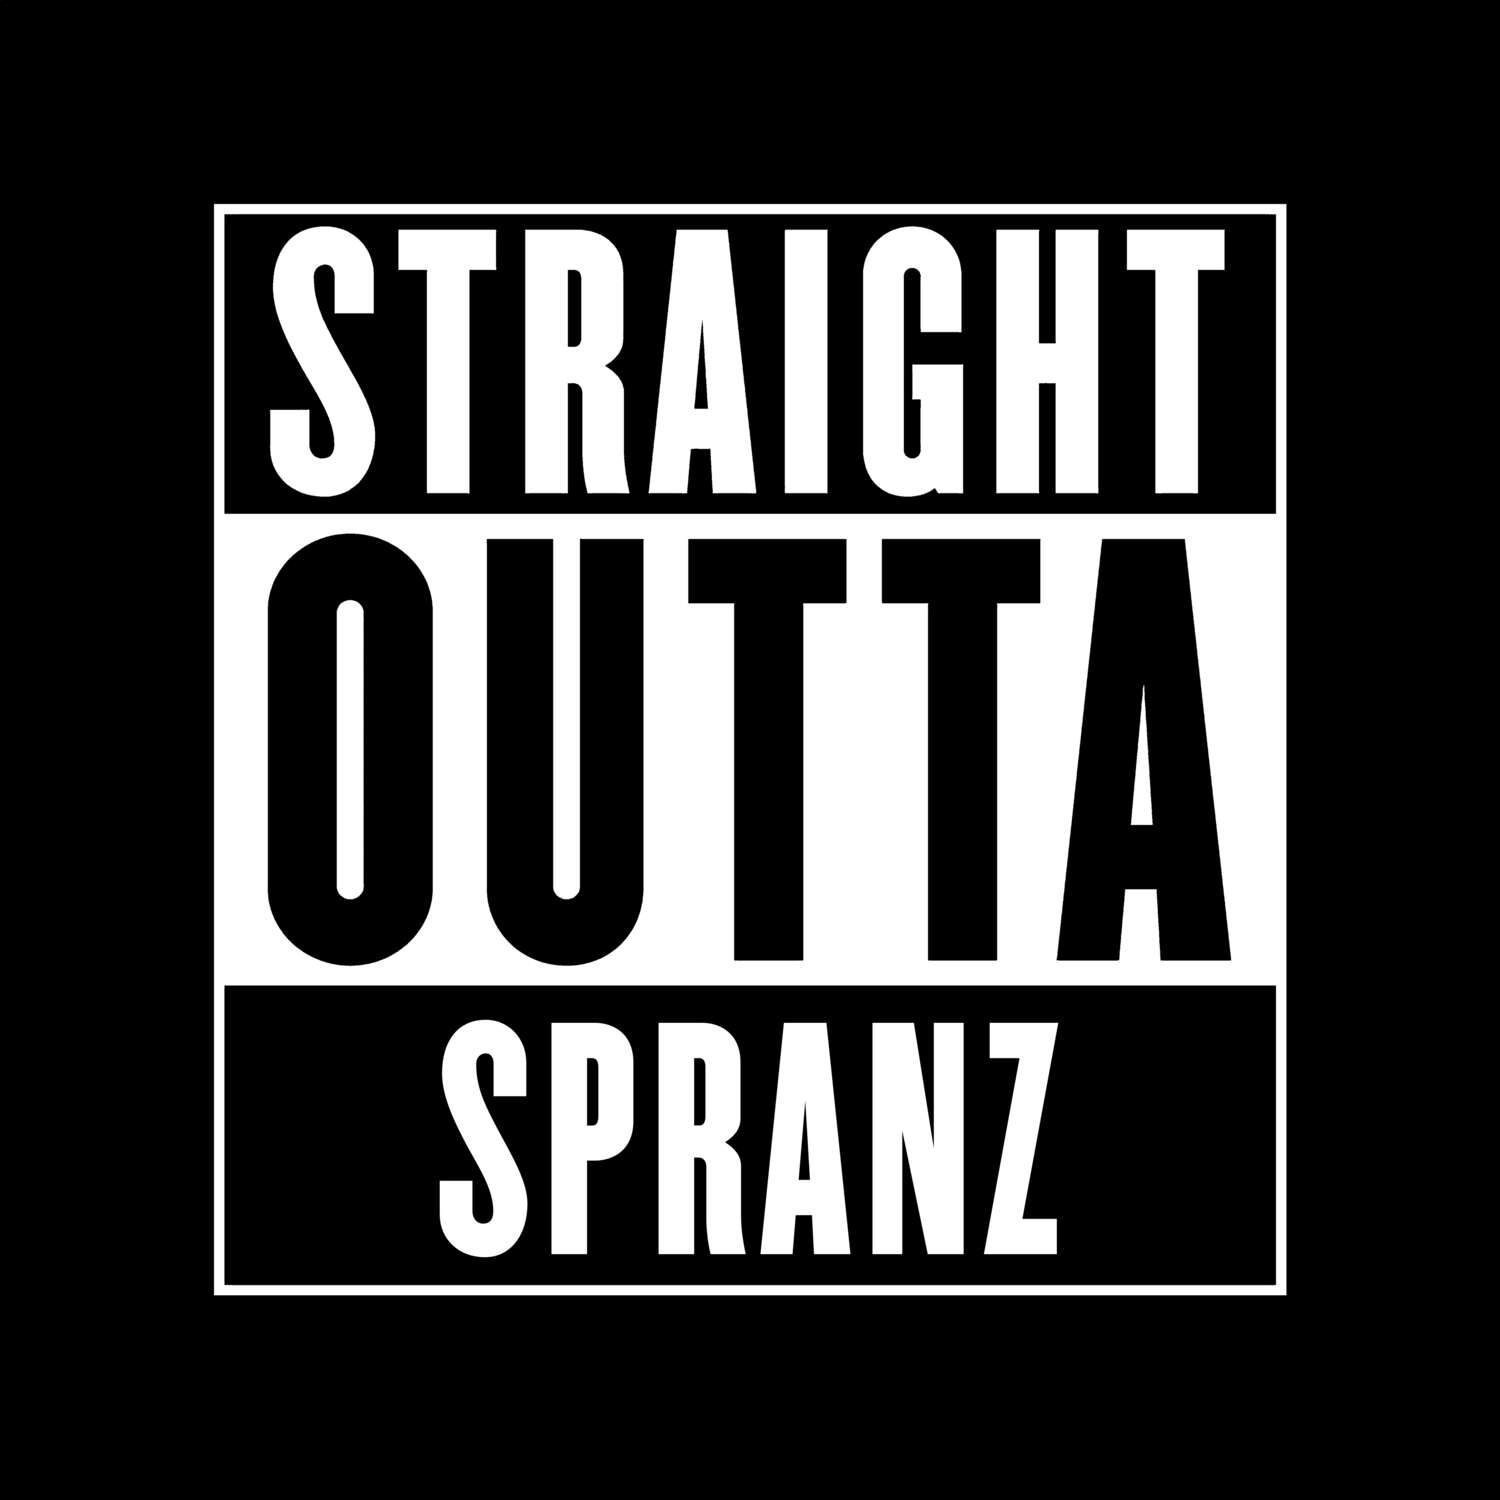 Spranz T-Shirt »Straight Outta«